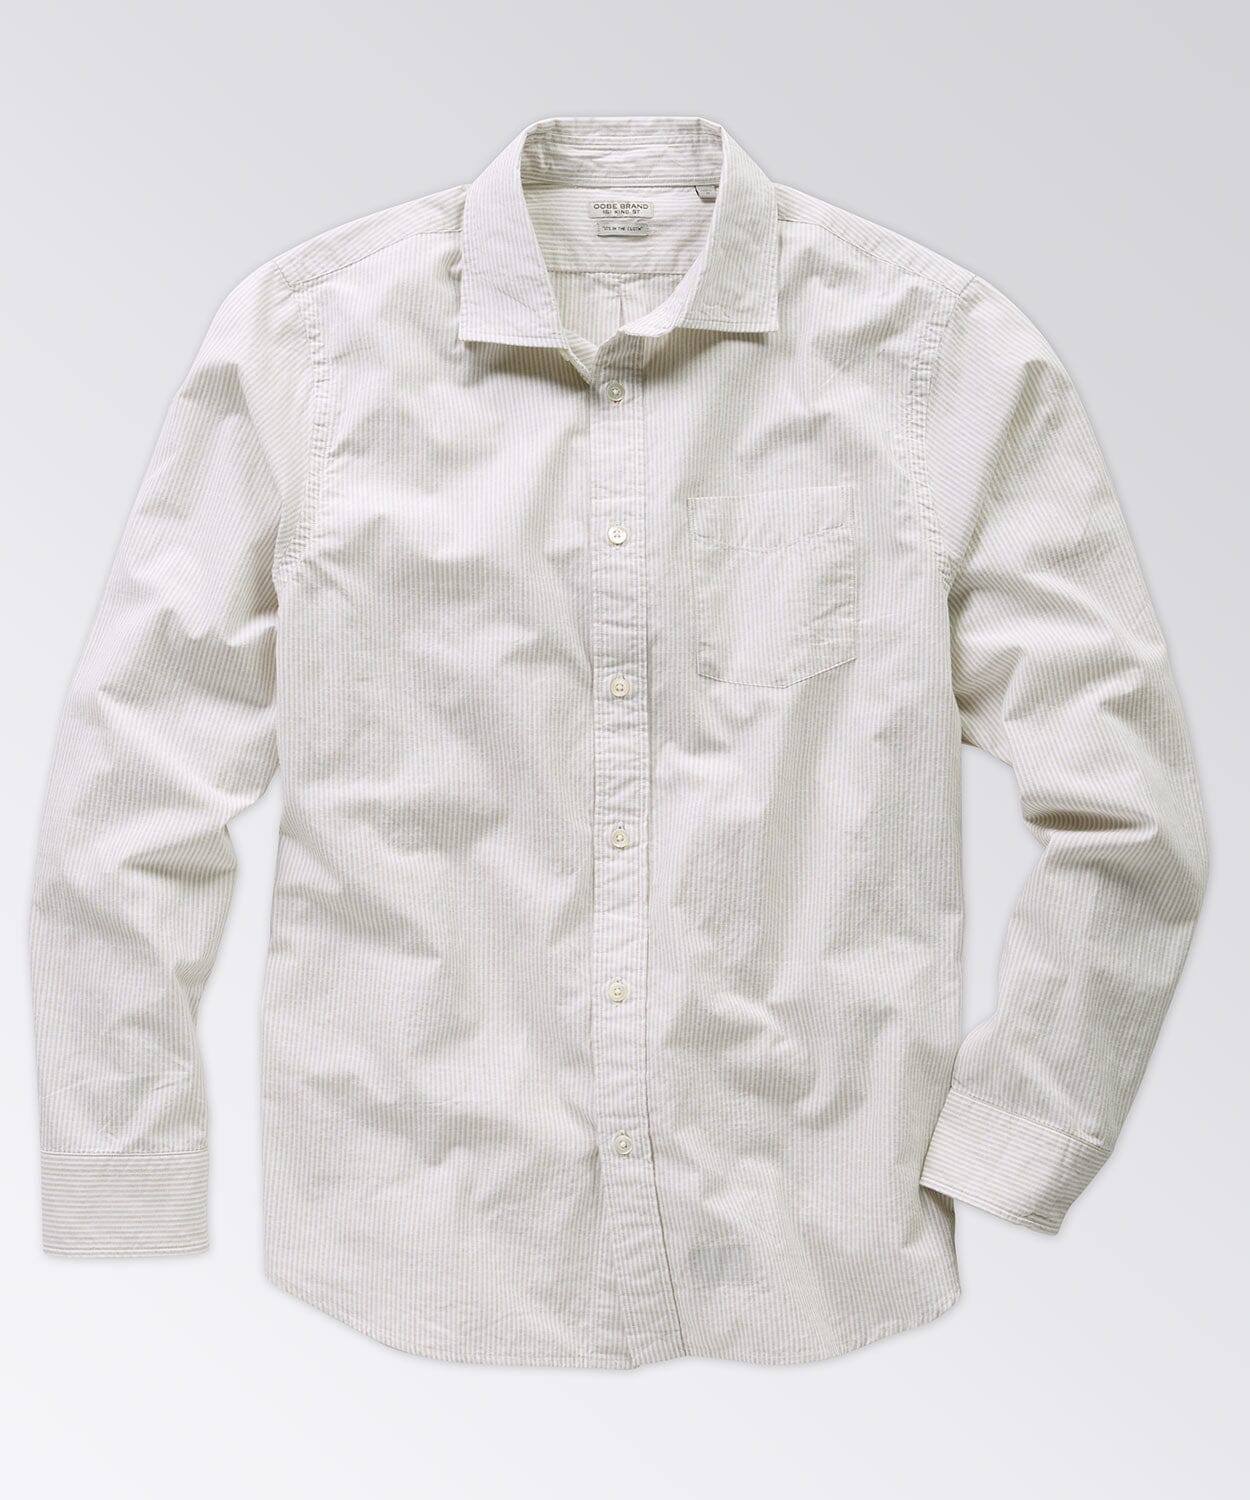 Excella Shirt Button Downs OOBE BRAND Khaki White Stripe S 